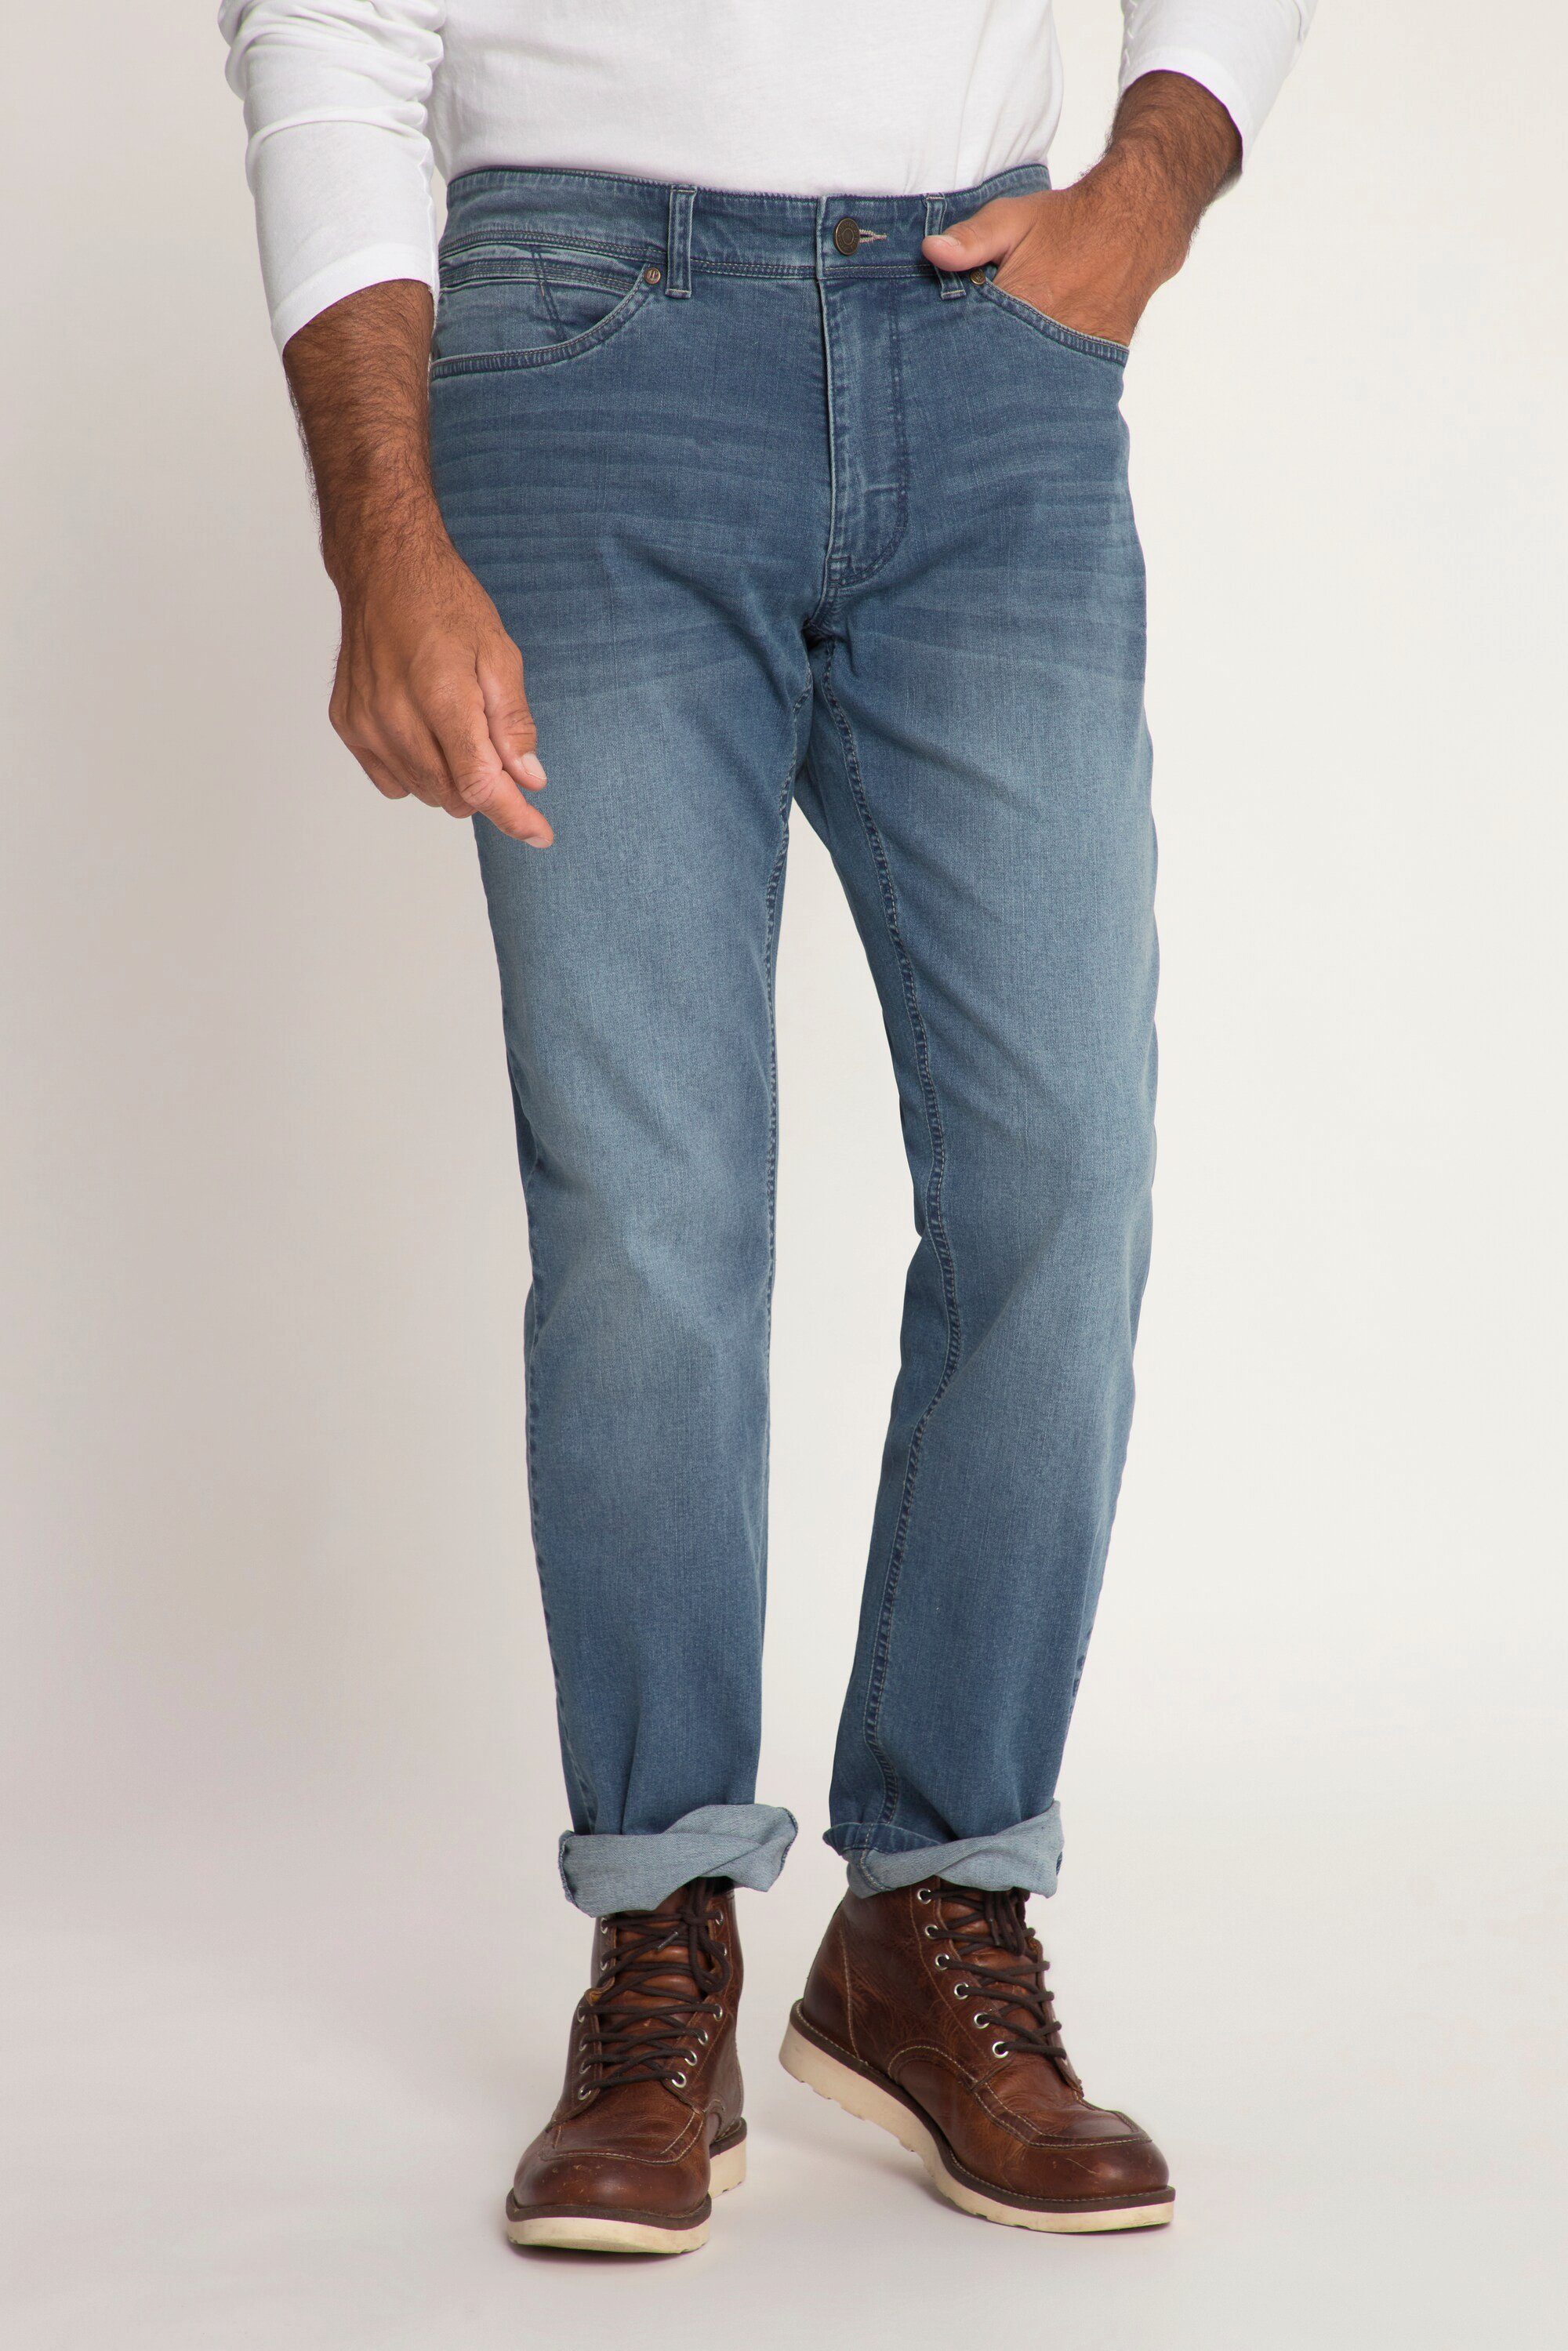 JP1880 Cargohose Jeans lightweight Bauchfit Regular Fit 5-Pocket blue denim